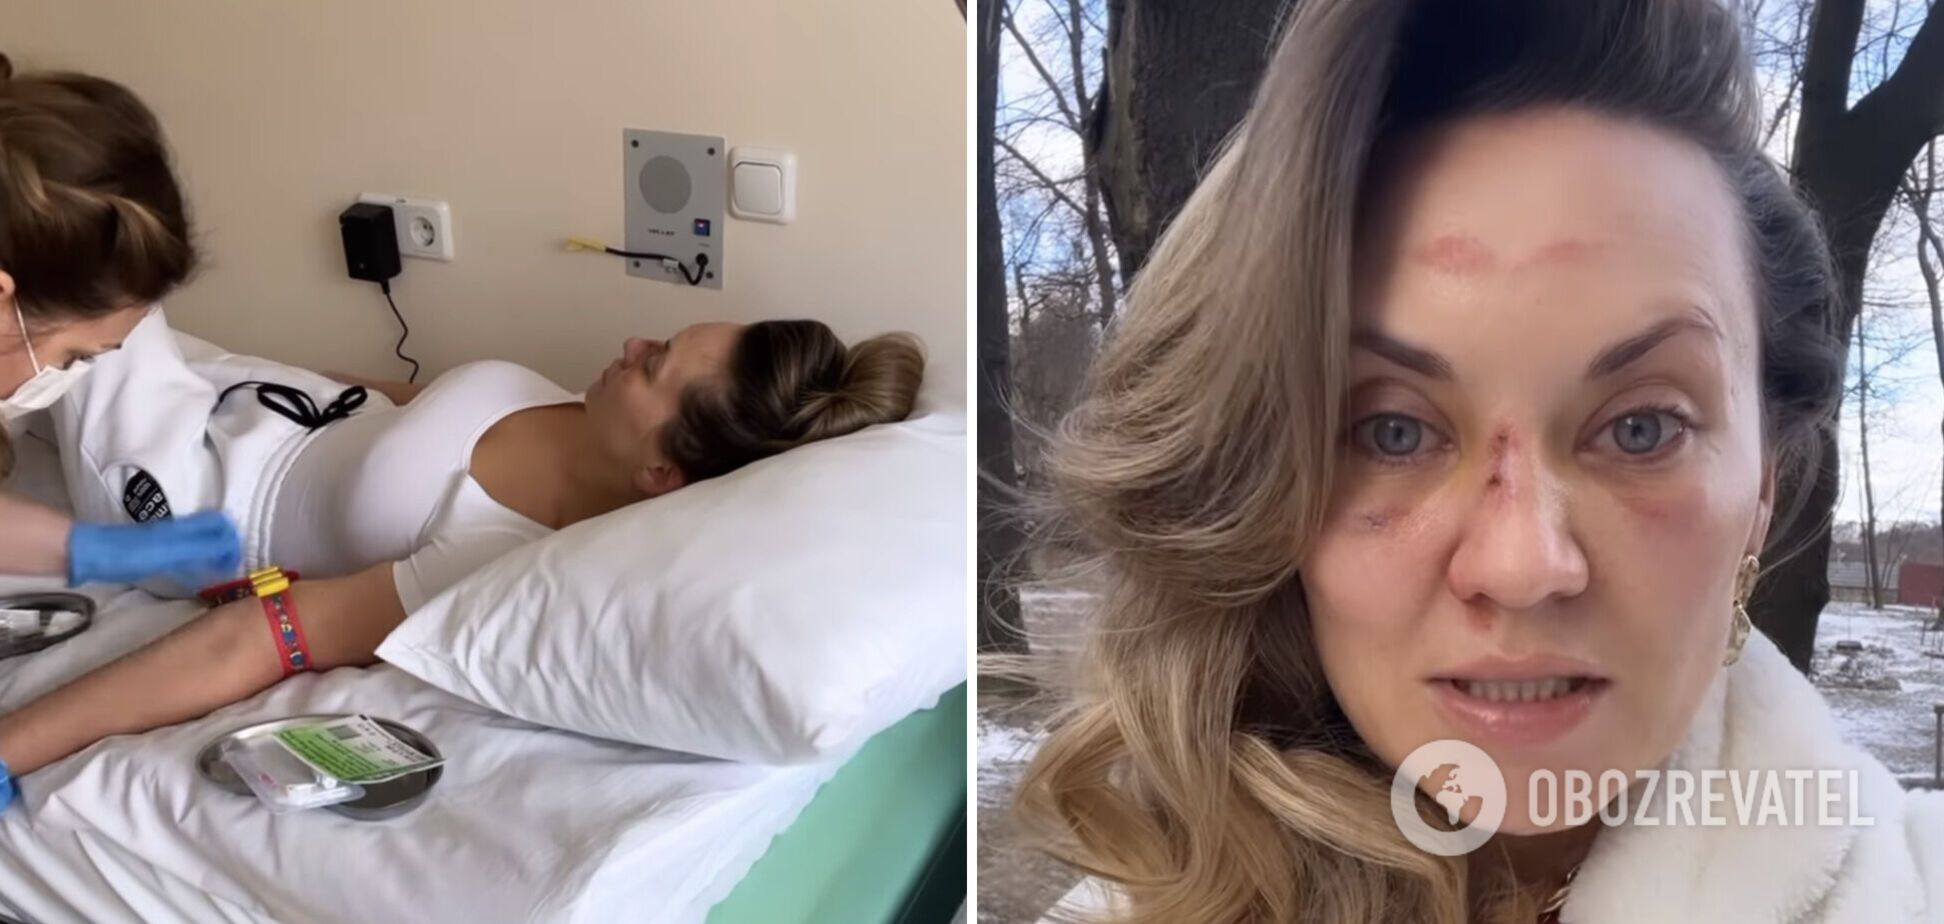 Саліванчук, яка серйозно травмувала обличчя та голову, готується до операції: буду плакати, якщо говоритиму про це